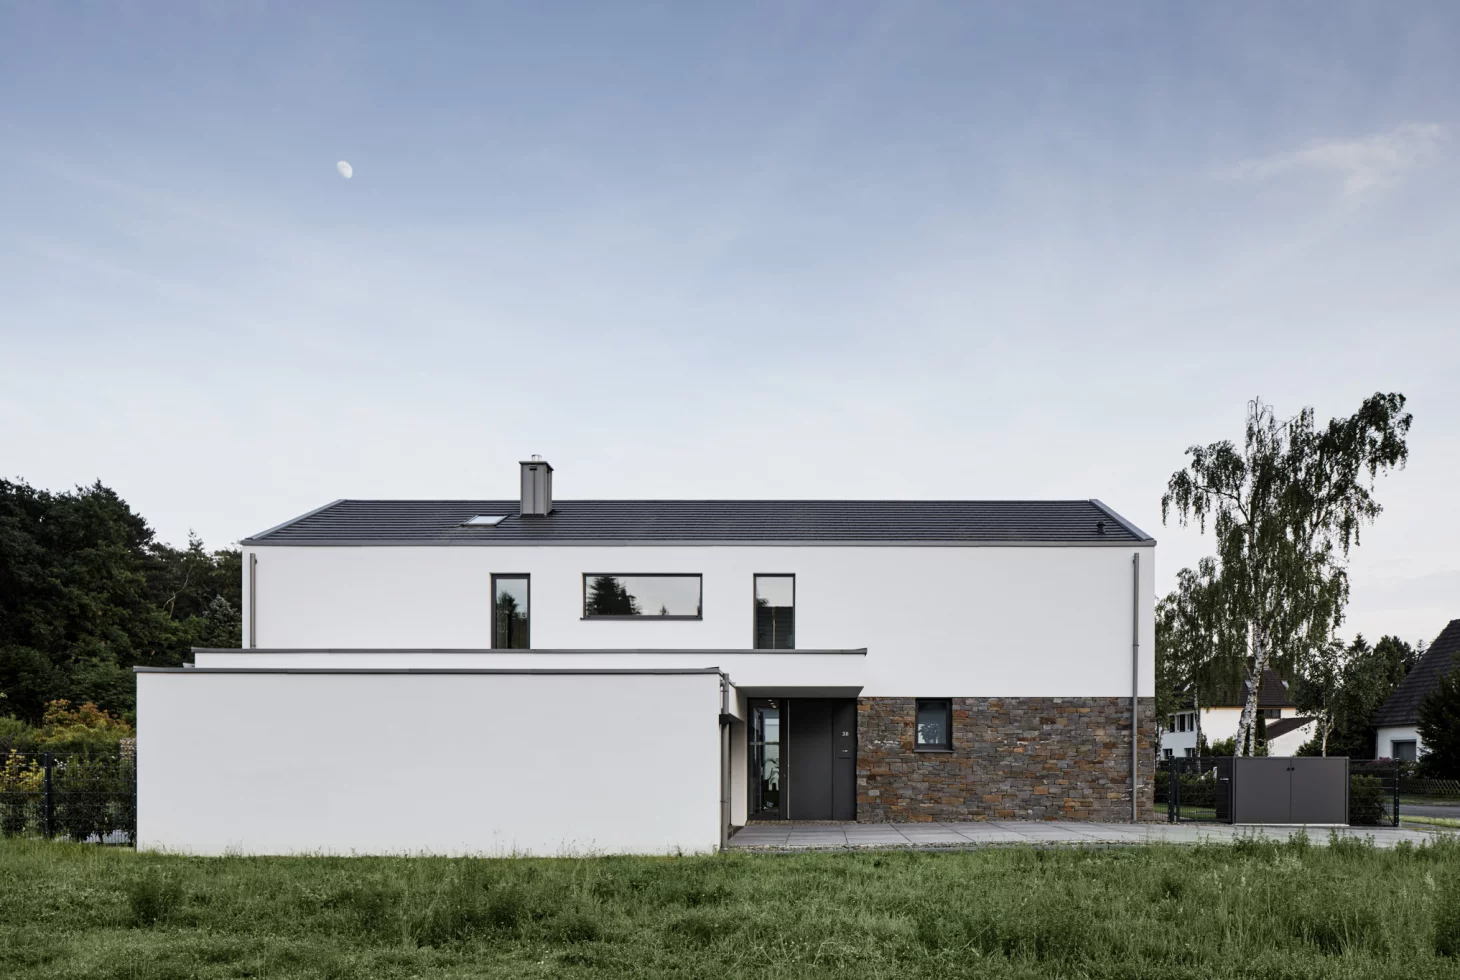 Traufseite eines minimalistischen, weiss verputzten Einfamilienhauses mit Steinsockel